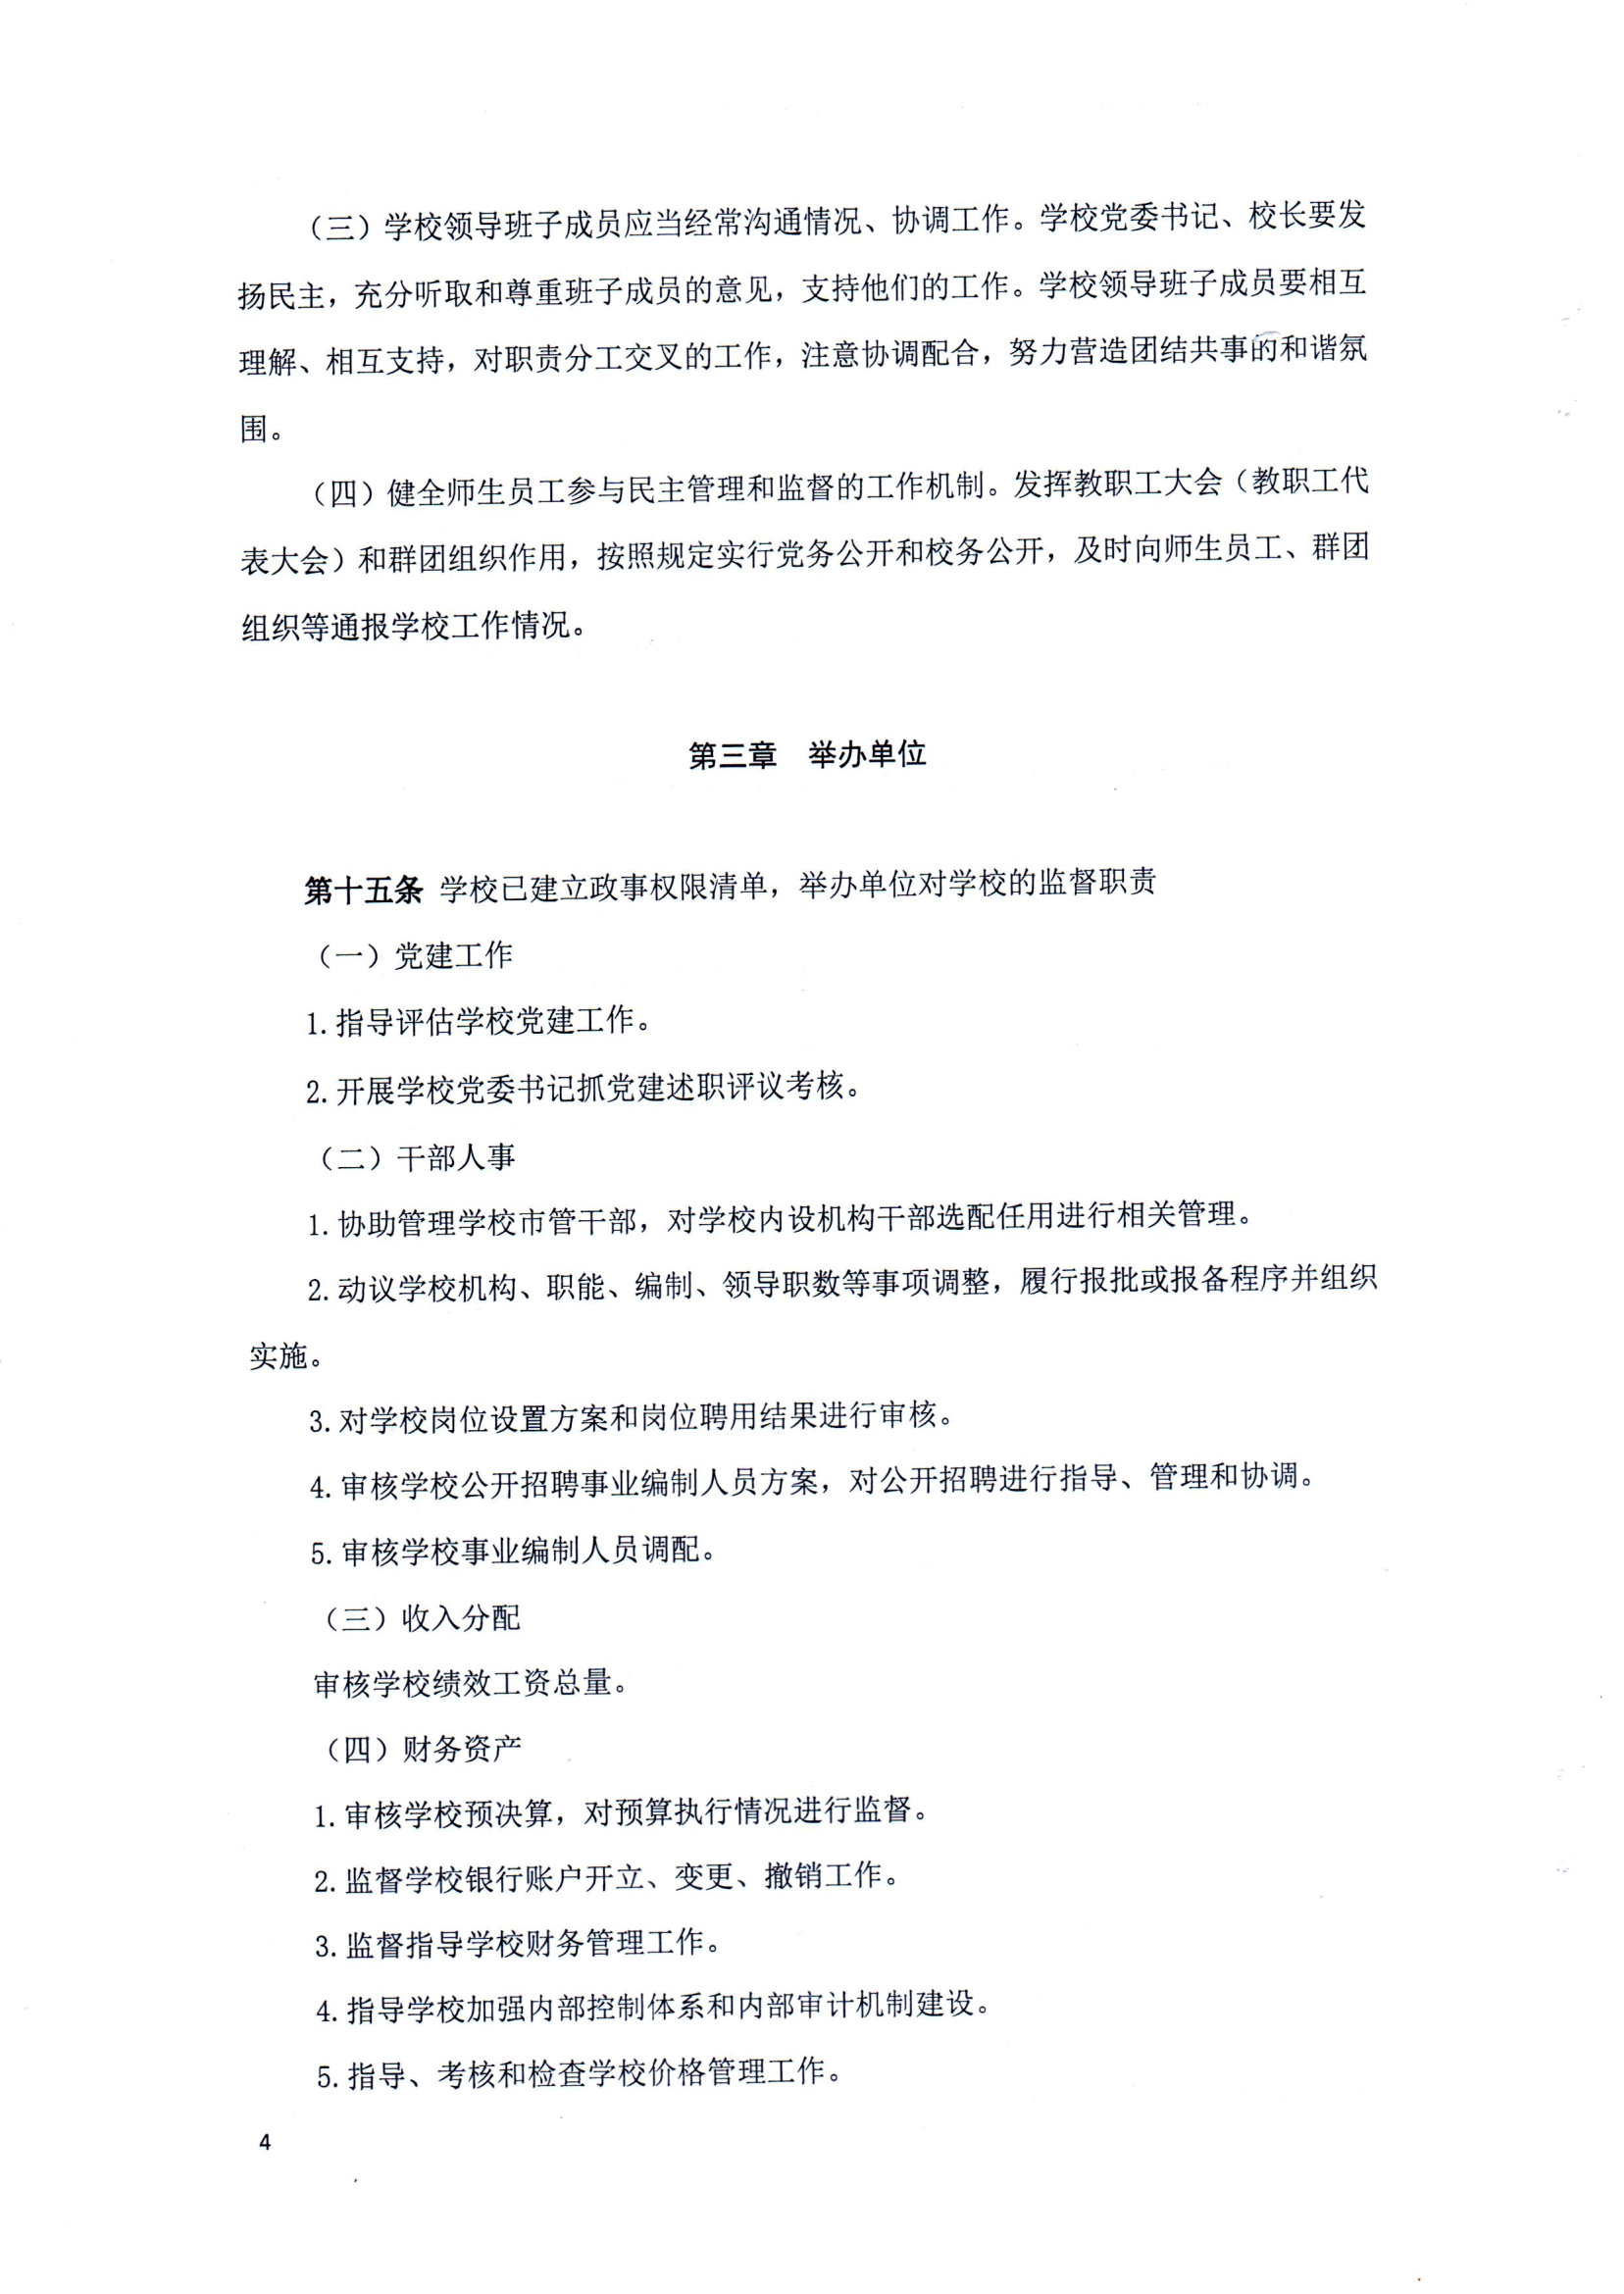 （中国）有限公司官网章程（修正案）_03.png